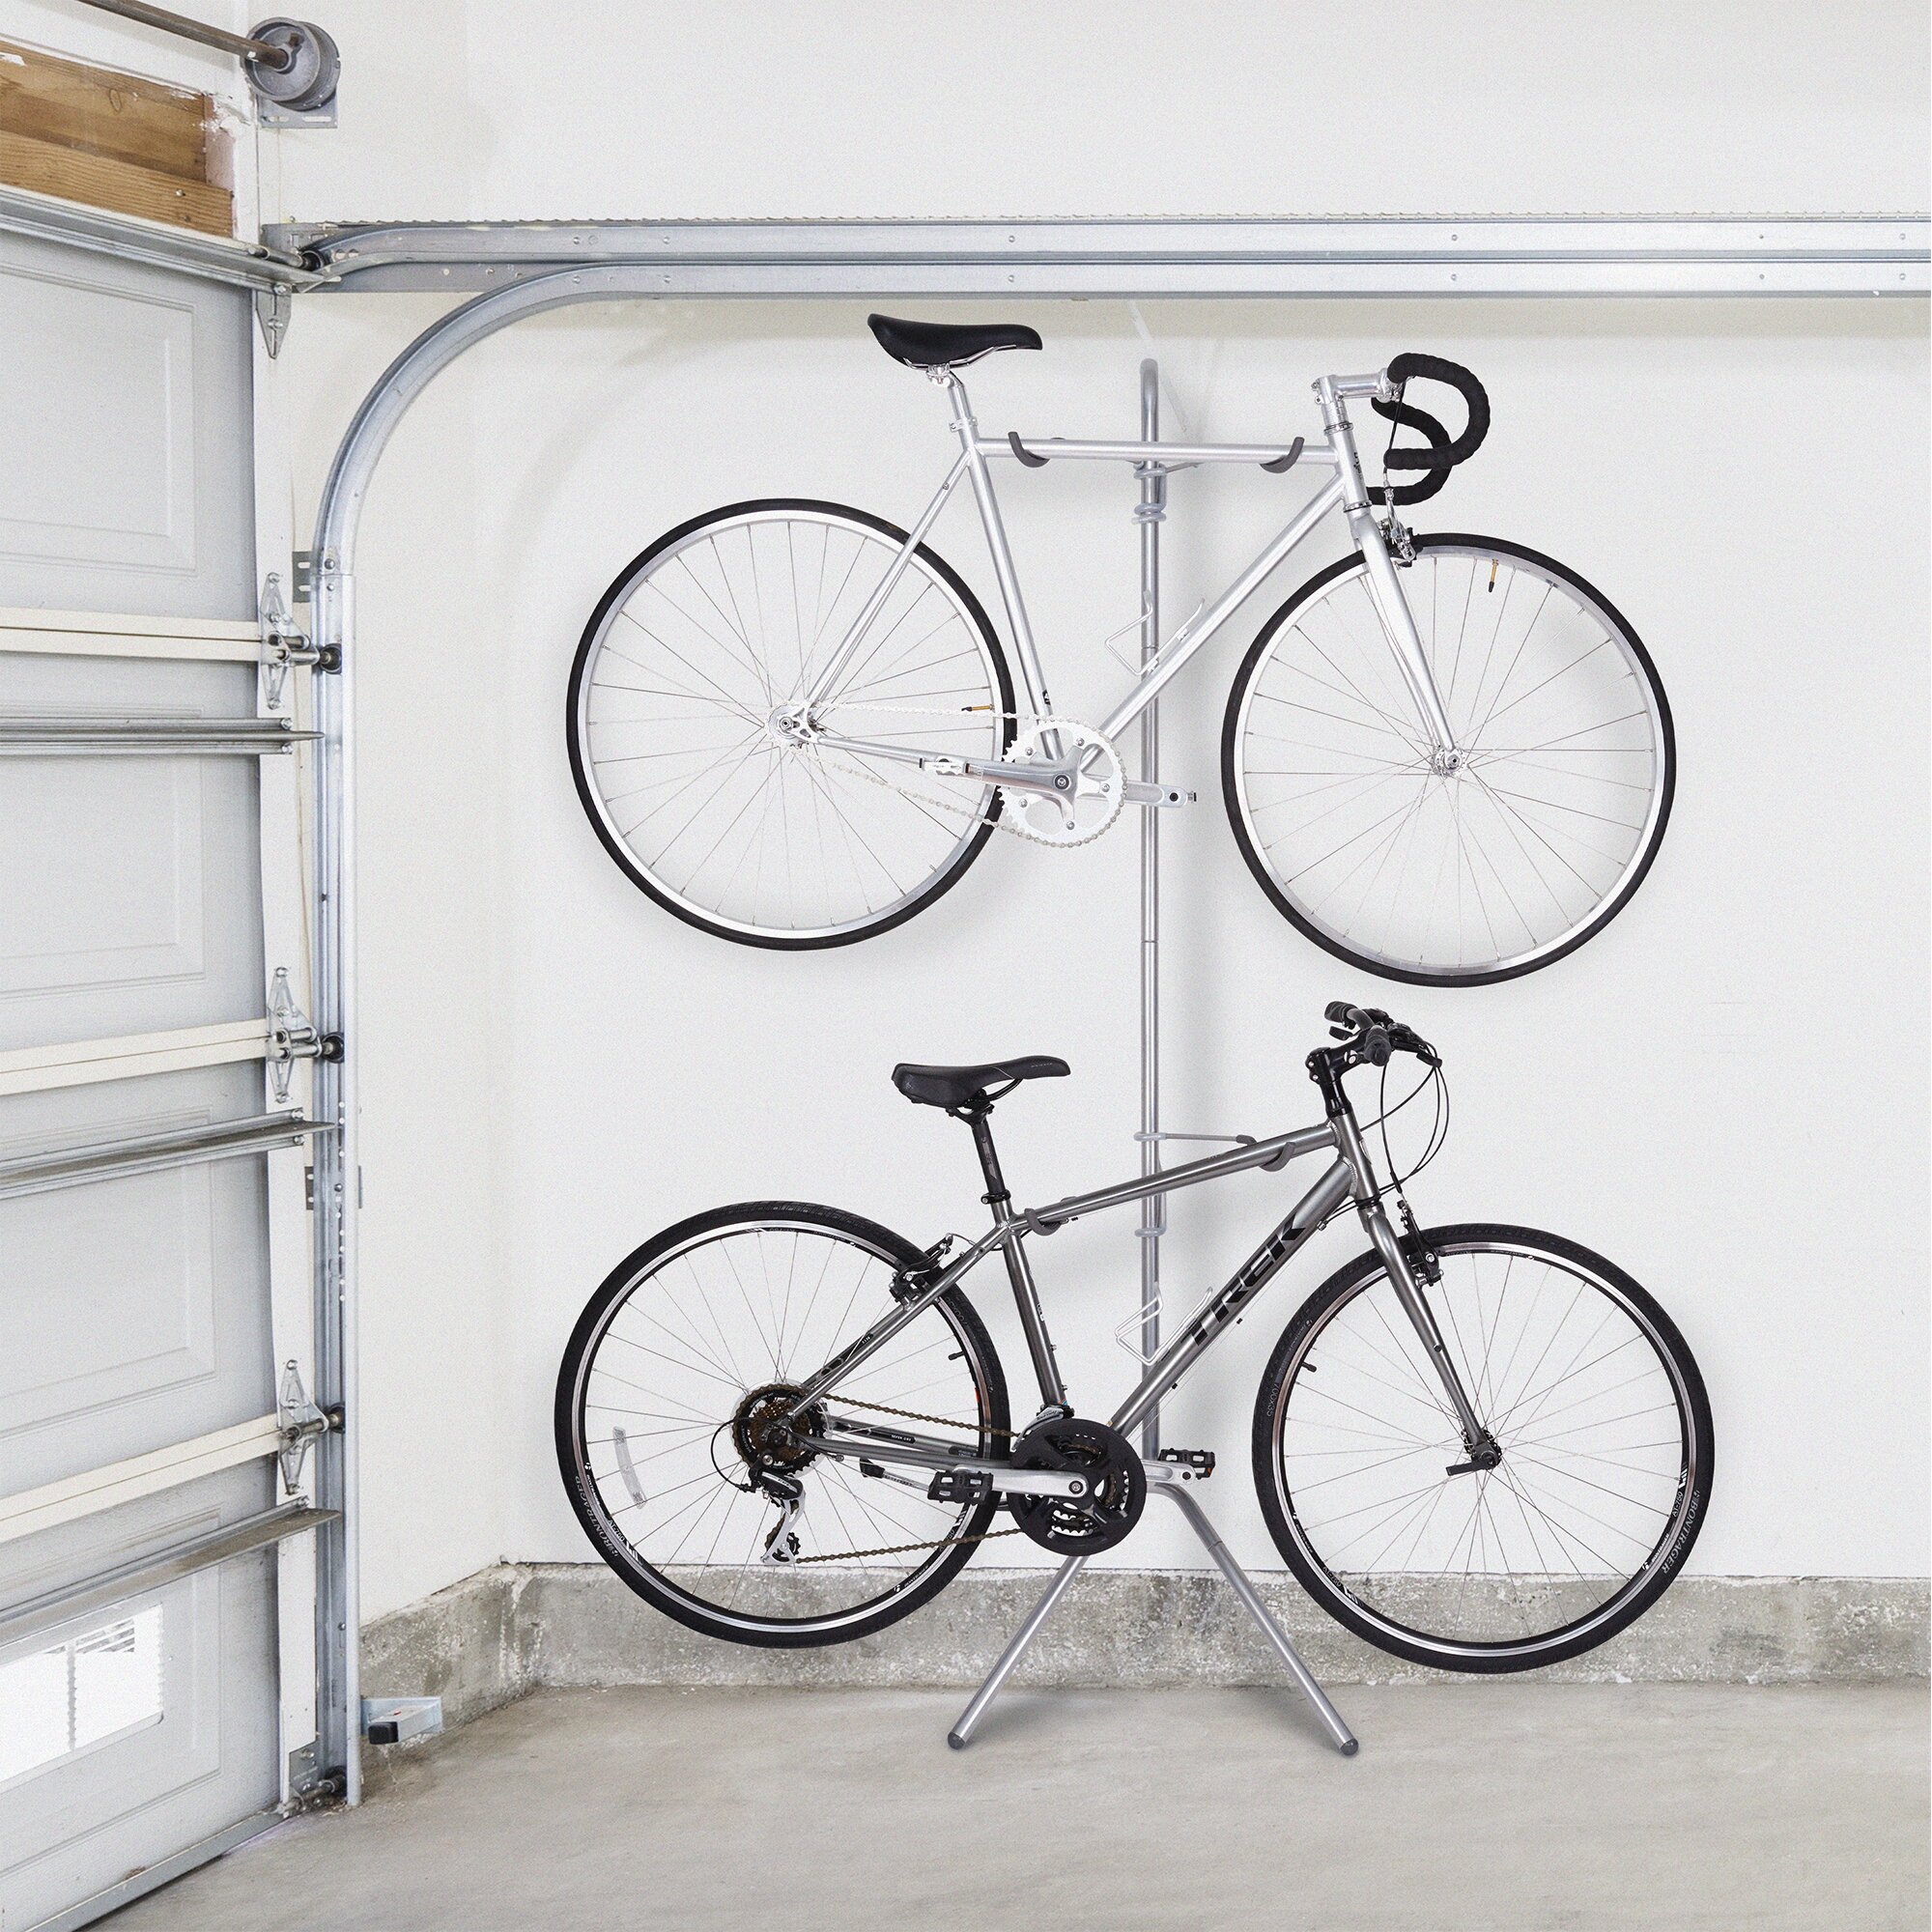 freestanding bike rack for garage